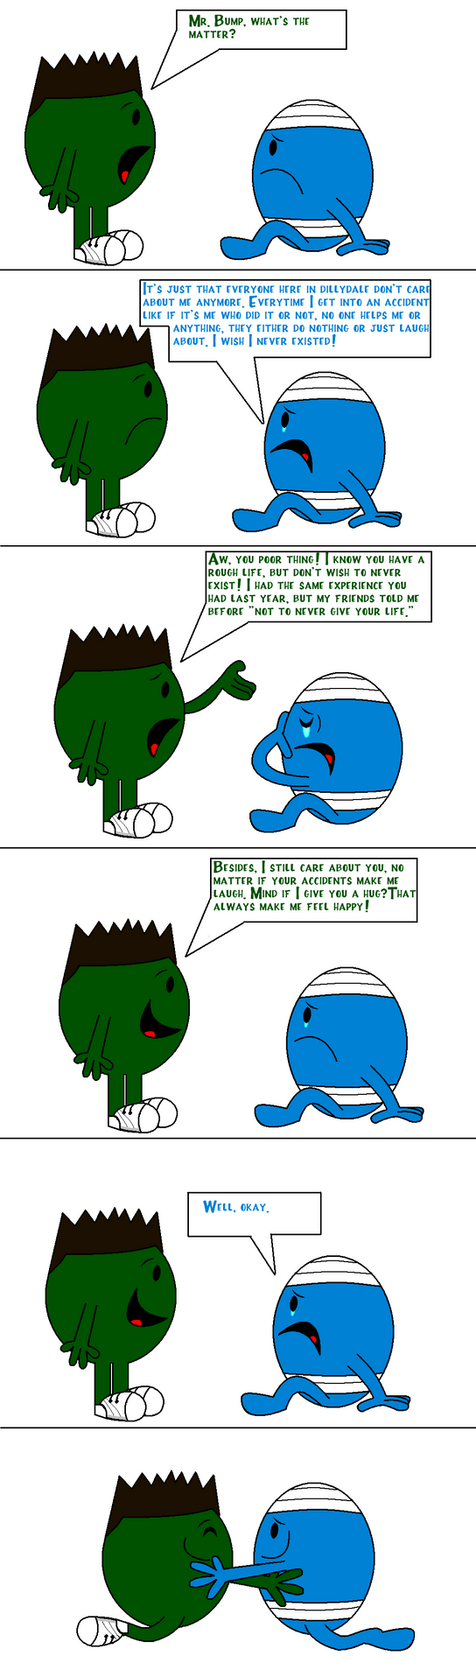 Mr. Bump comic by Percyfan94 on DeviantArt